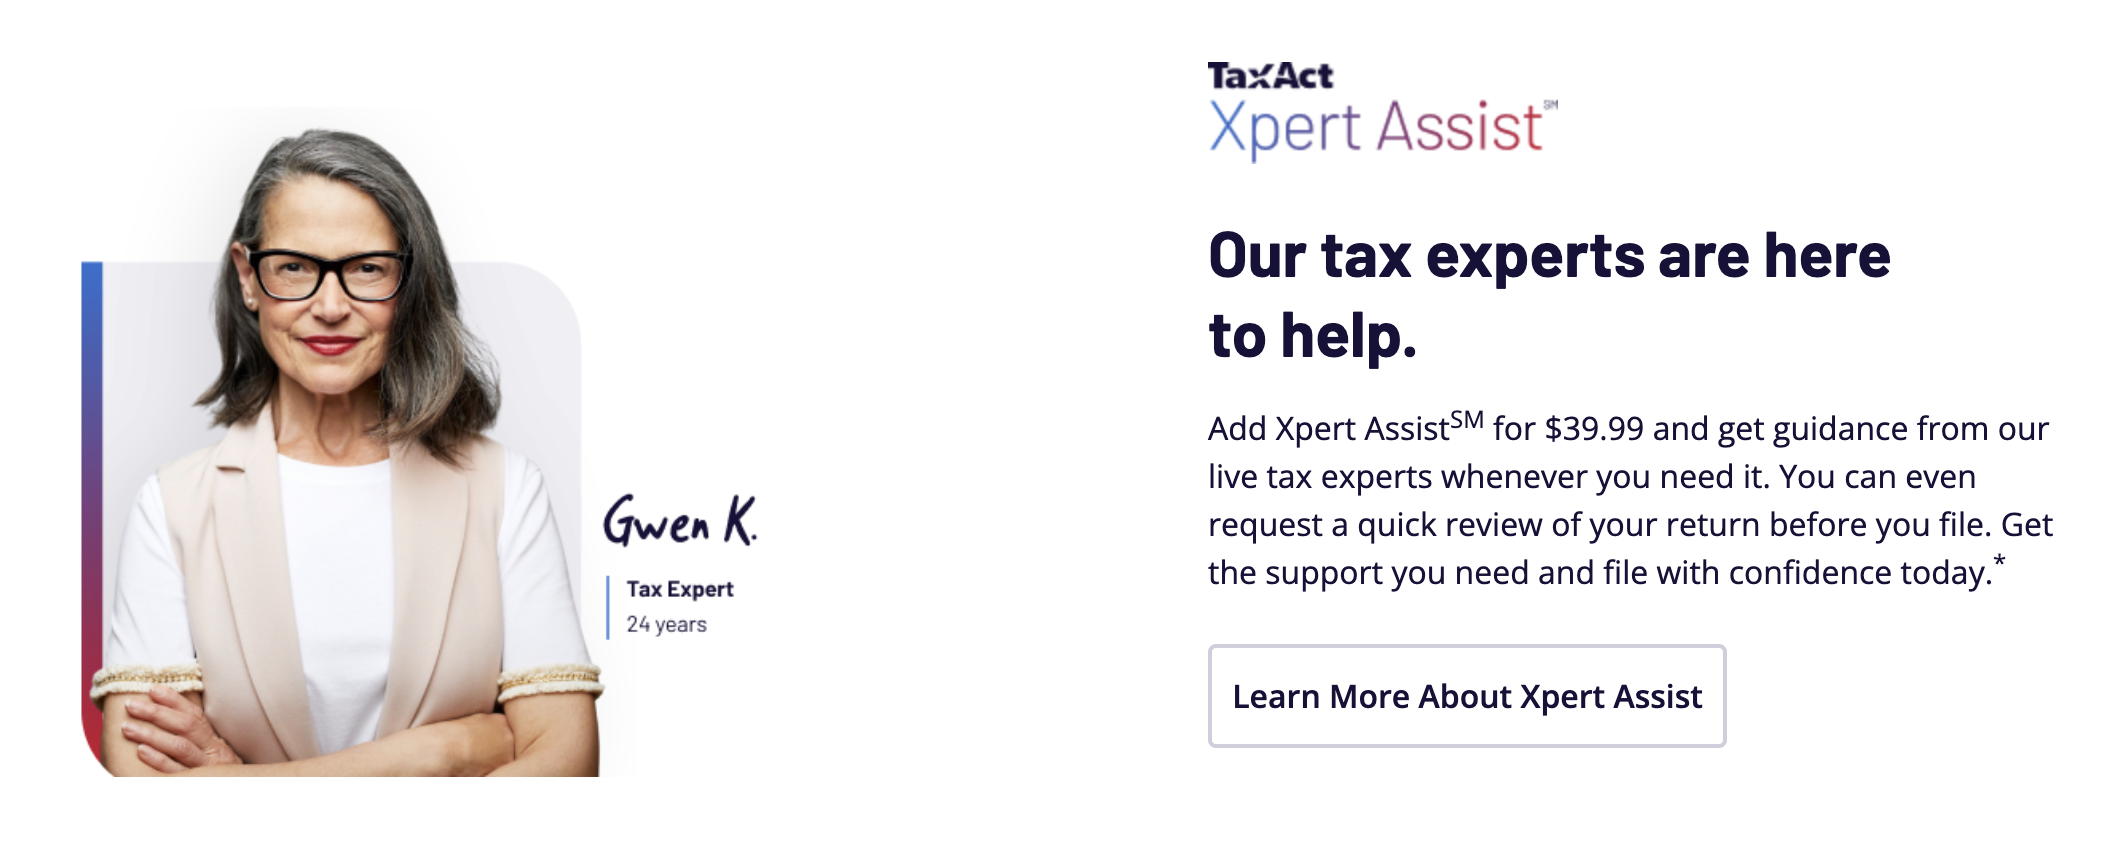 Screenshot of TaxAct Xpert Assist